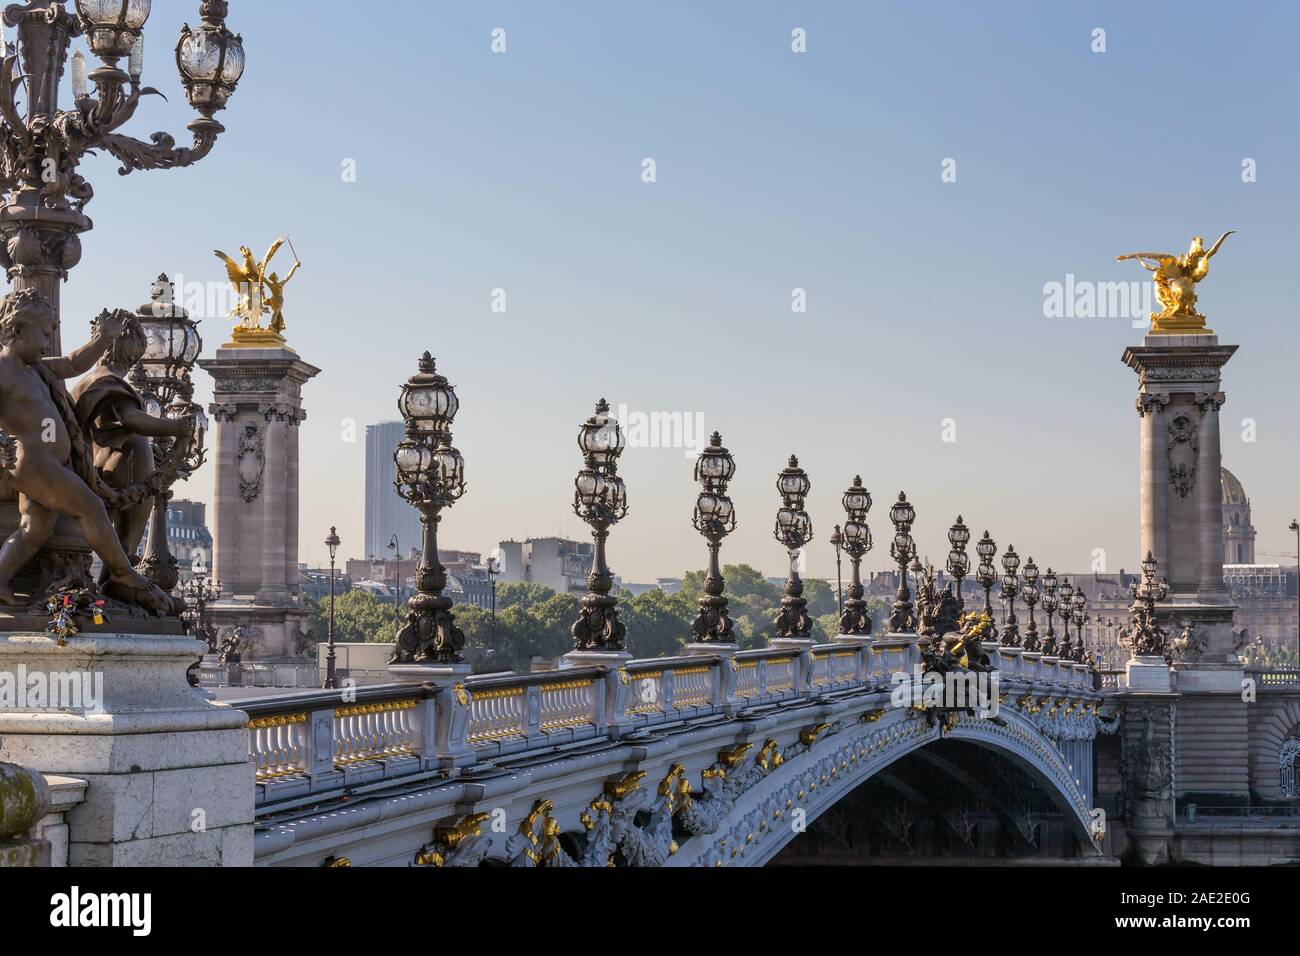 Il Alexander III Bridge è realizzato sotto forma di un unico ponte sul Fiume Senna, situato a Parigi tra gli Champs Elysees e la casa di inv Foto Stock